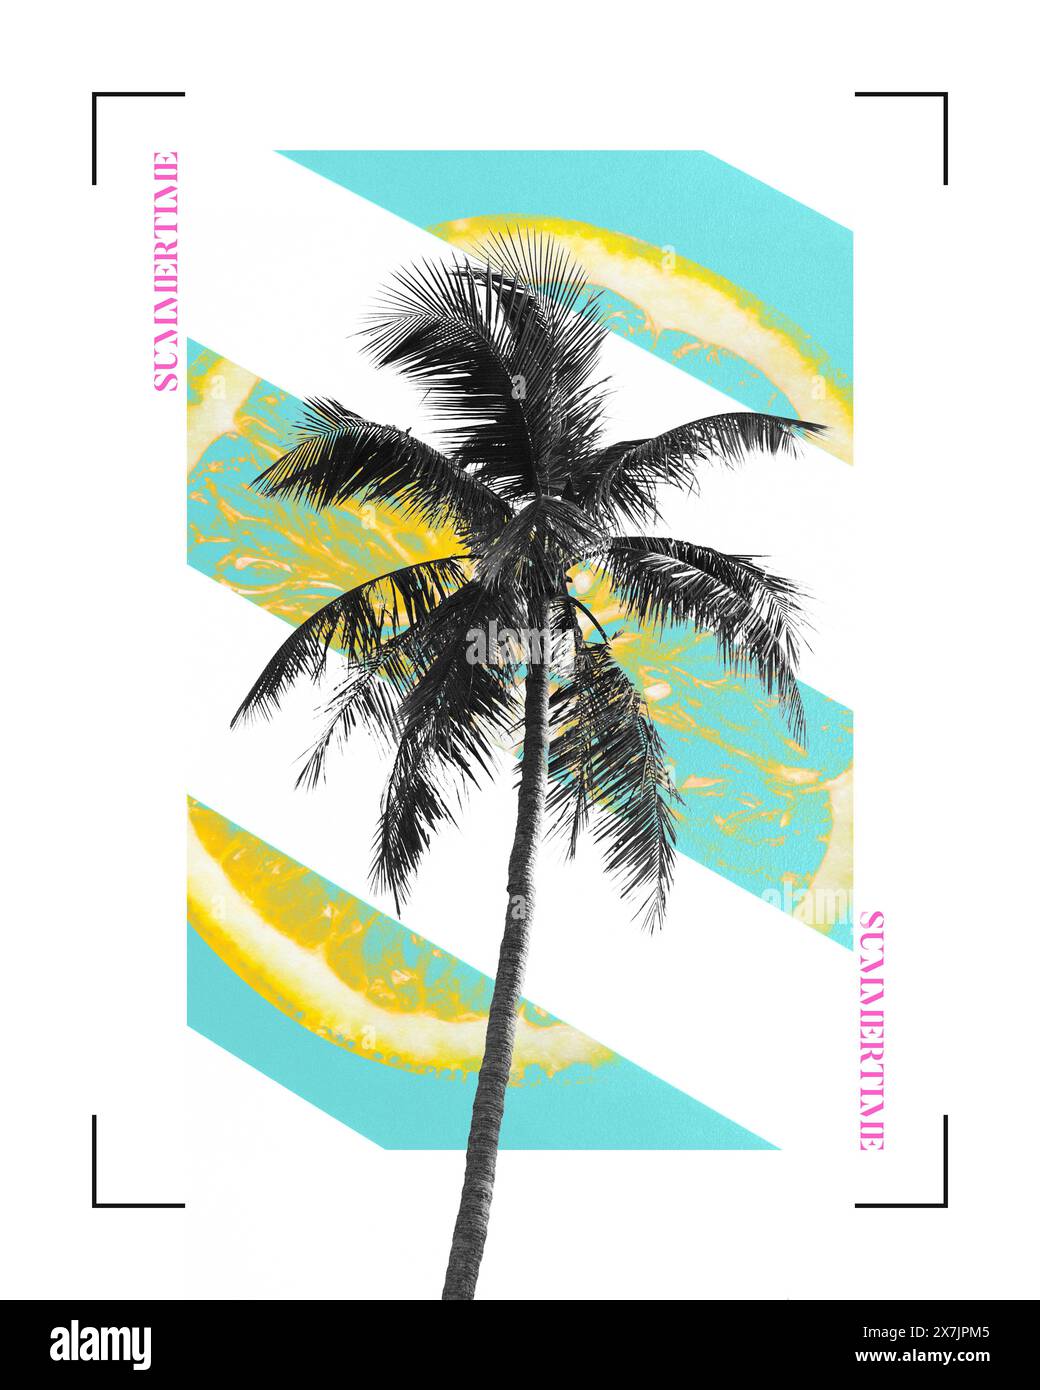 Arte collage contemporanea Palm Tree. Illustrazione delle vibrazioni estive, strisce verdi, arancio astratto come il sole. Un singolo albero su un poster digitale sulla spiaggia Foto Stock